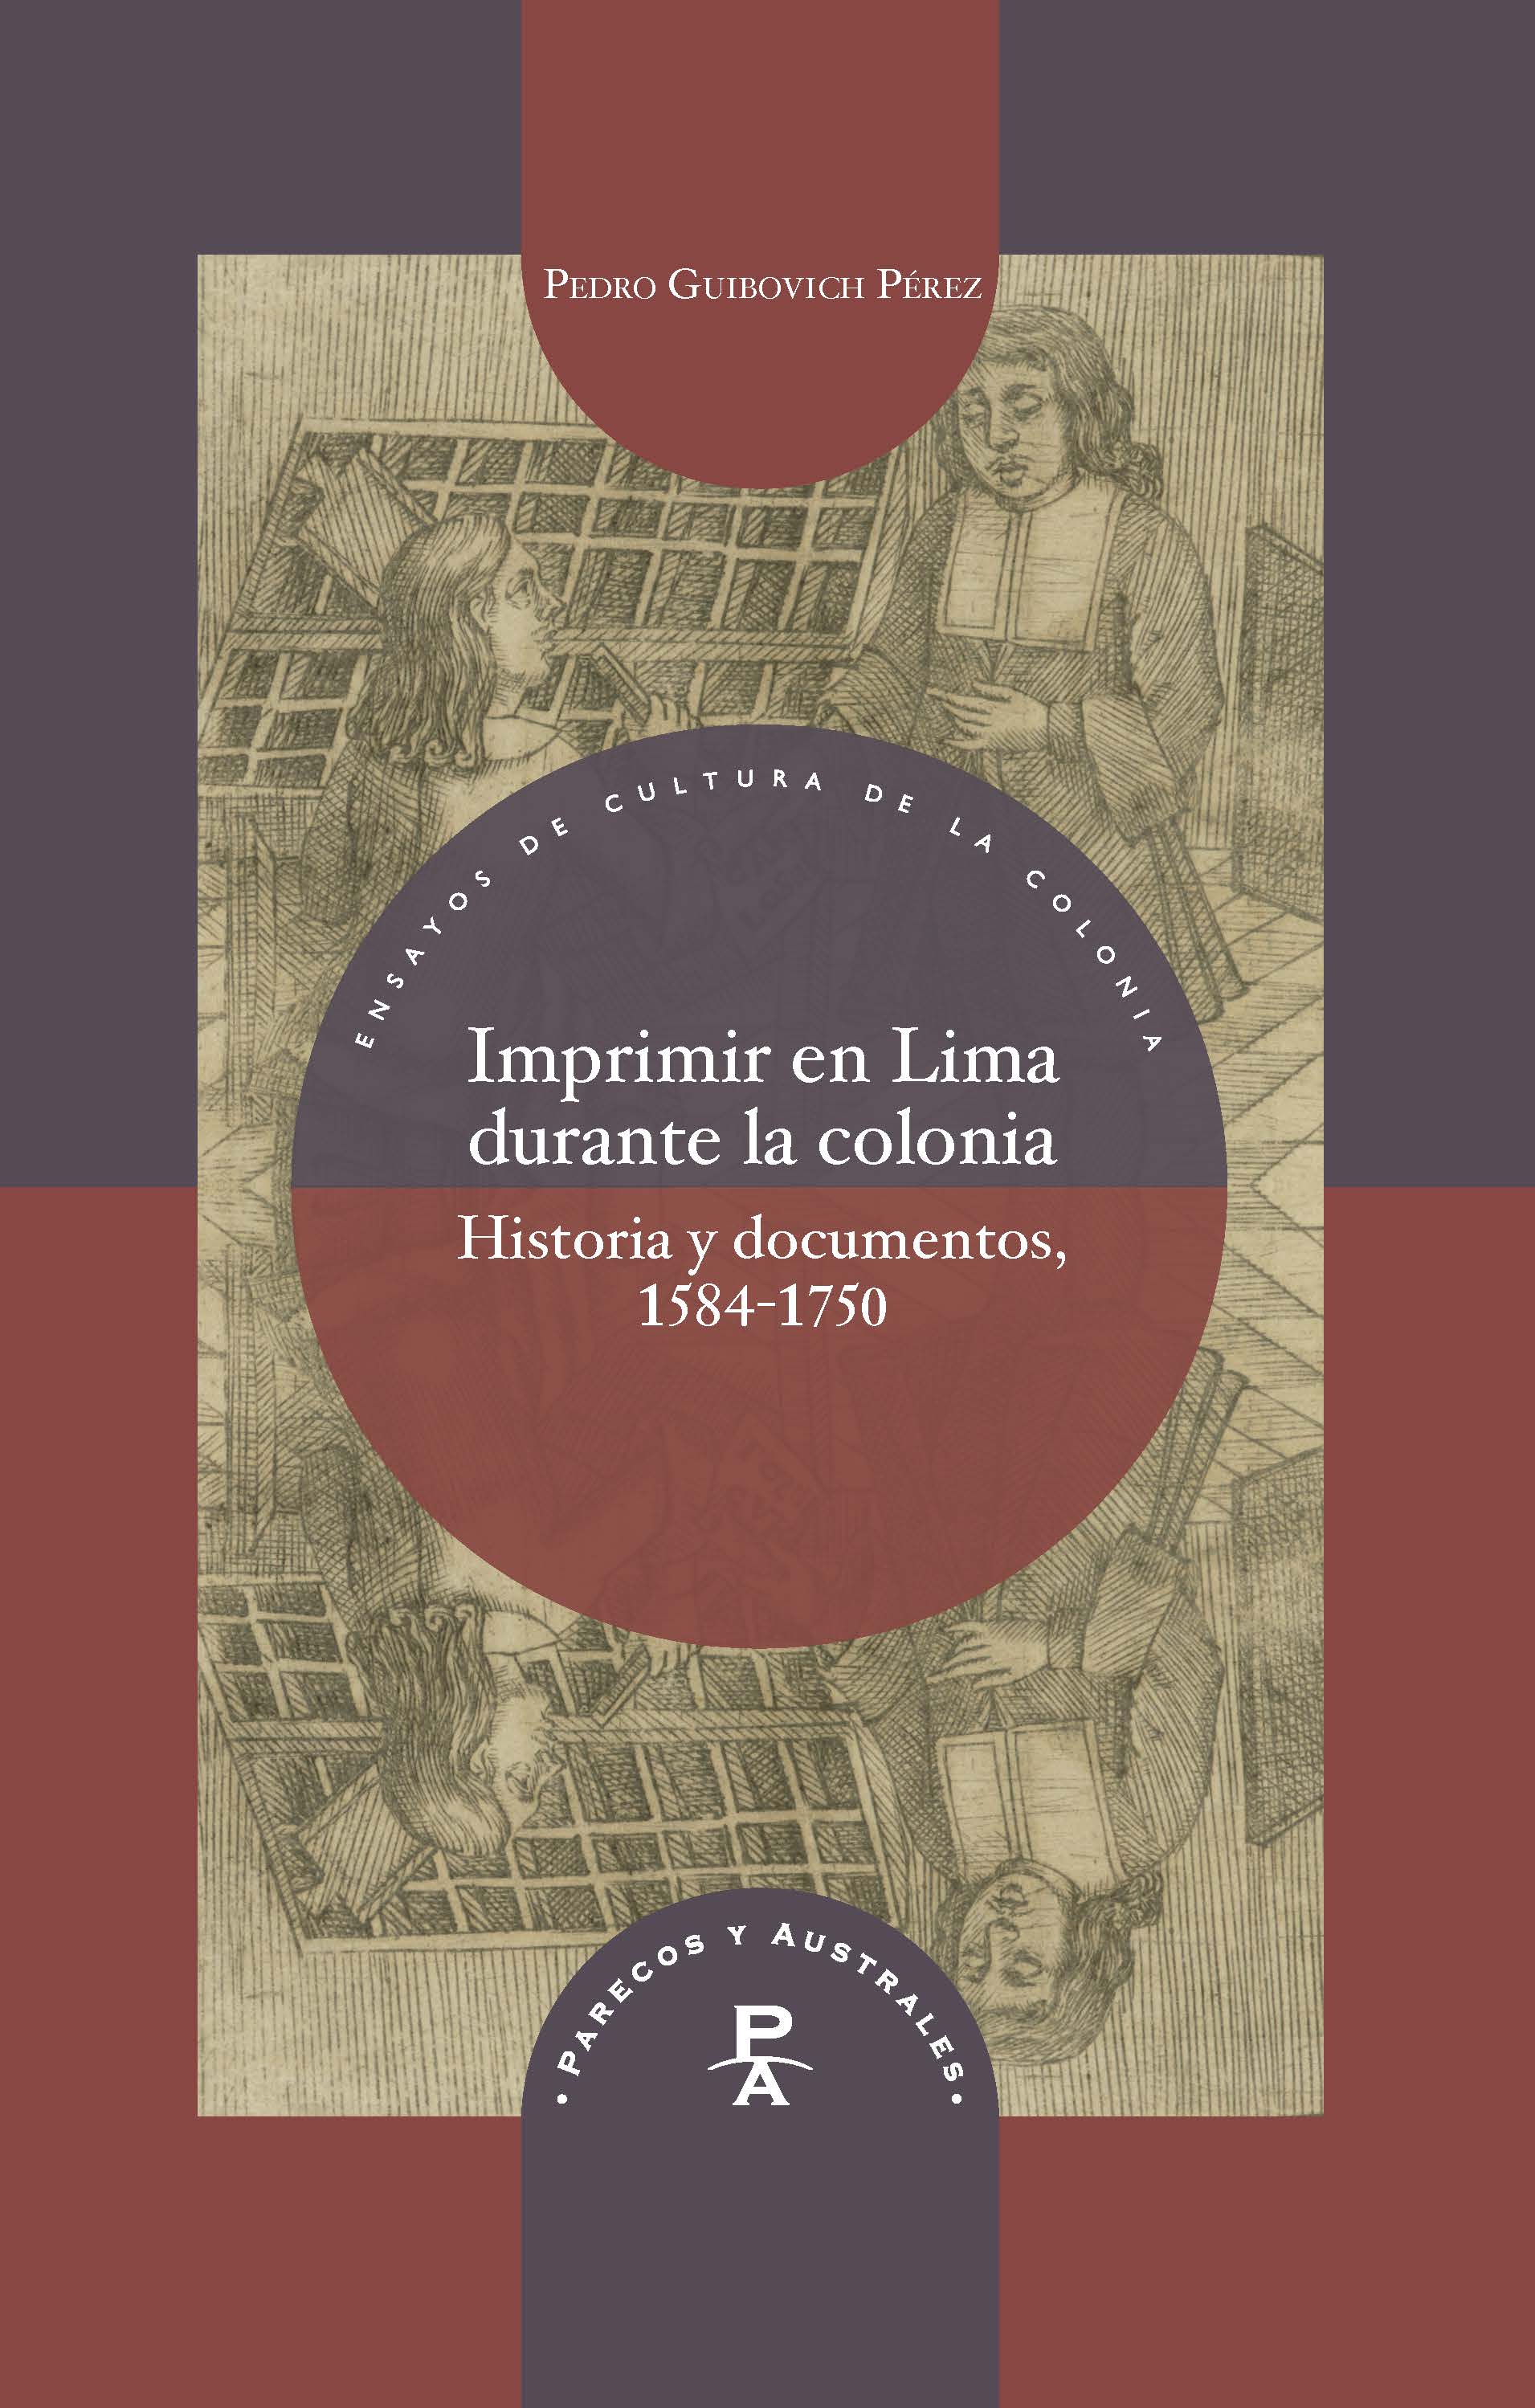 Libro: Mentira - 9788417978211 - Hériz, Enrique de - · Marcial Pons Librero